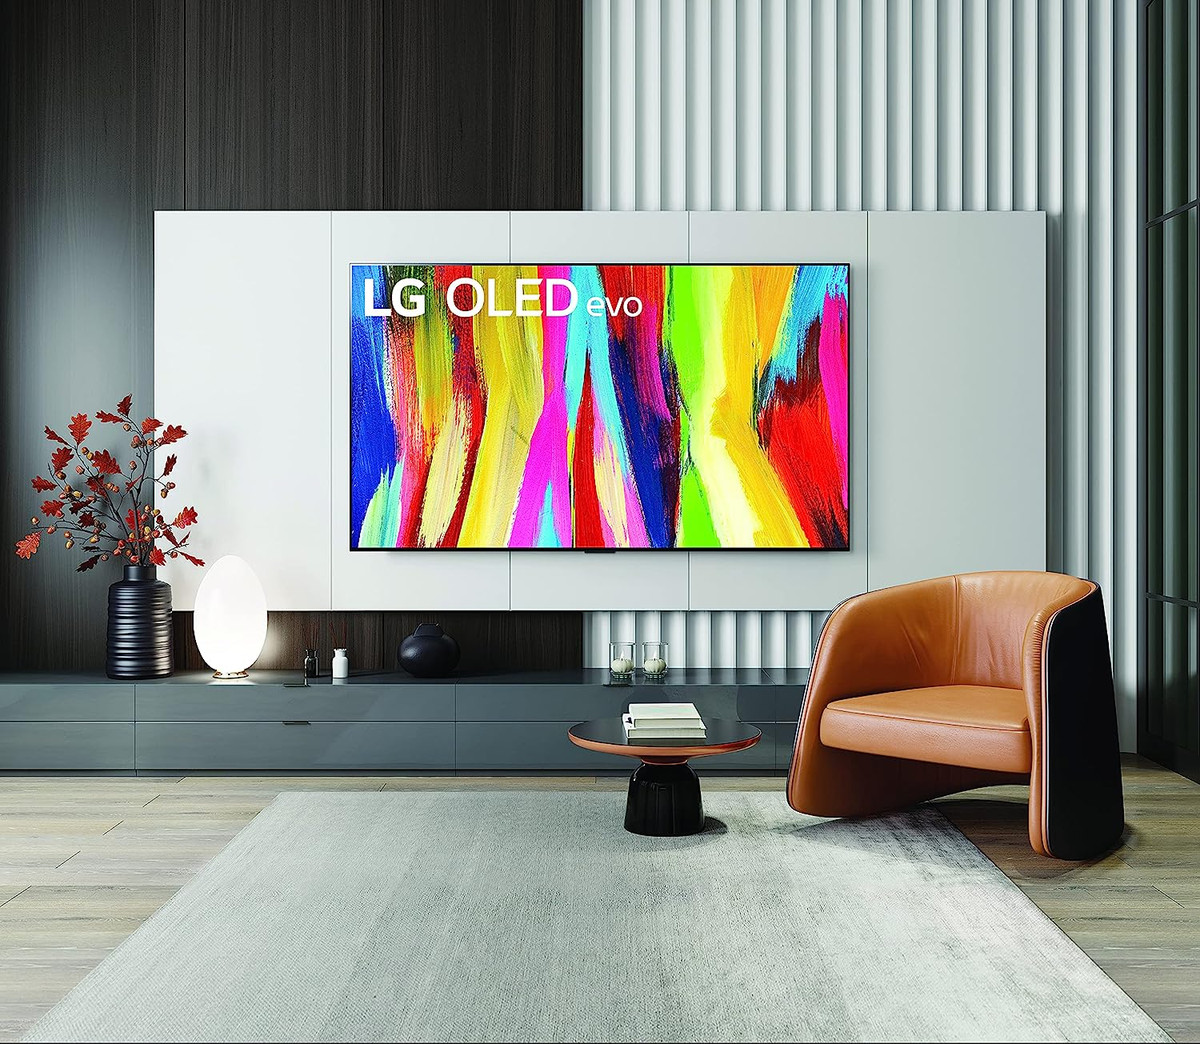 Een stockfoto van de LG C2 OLED TV